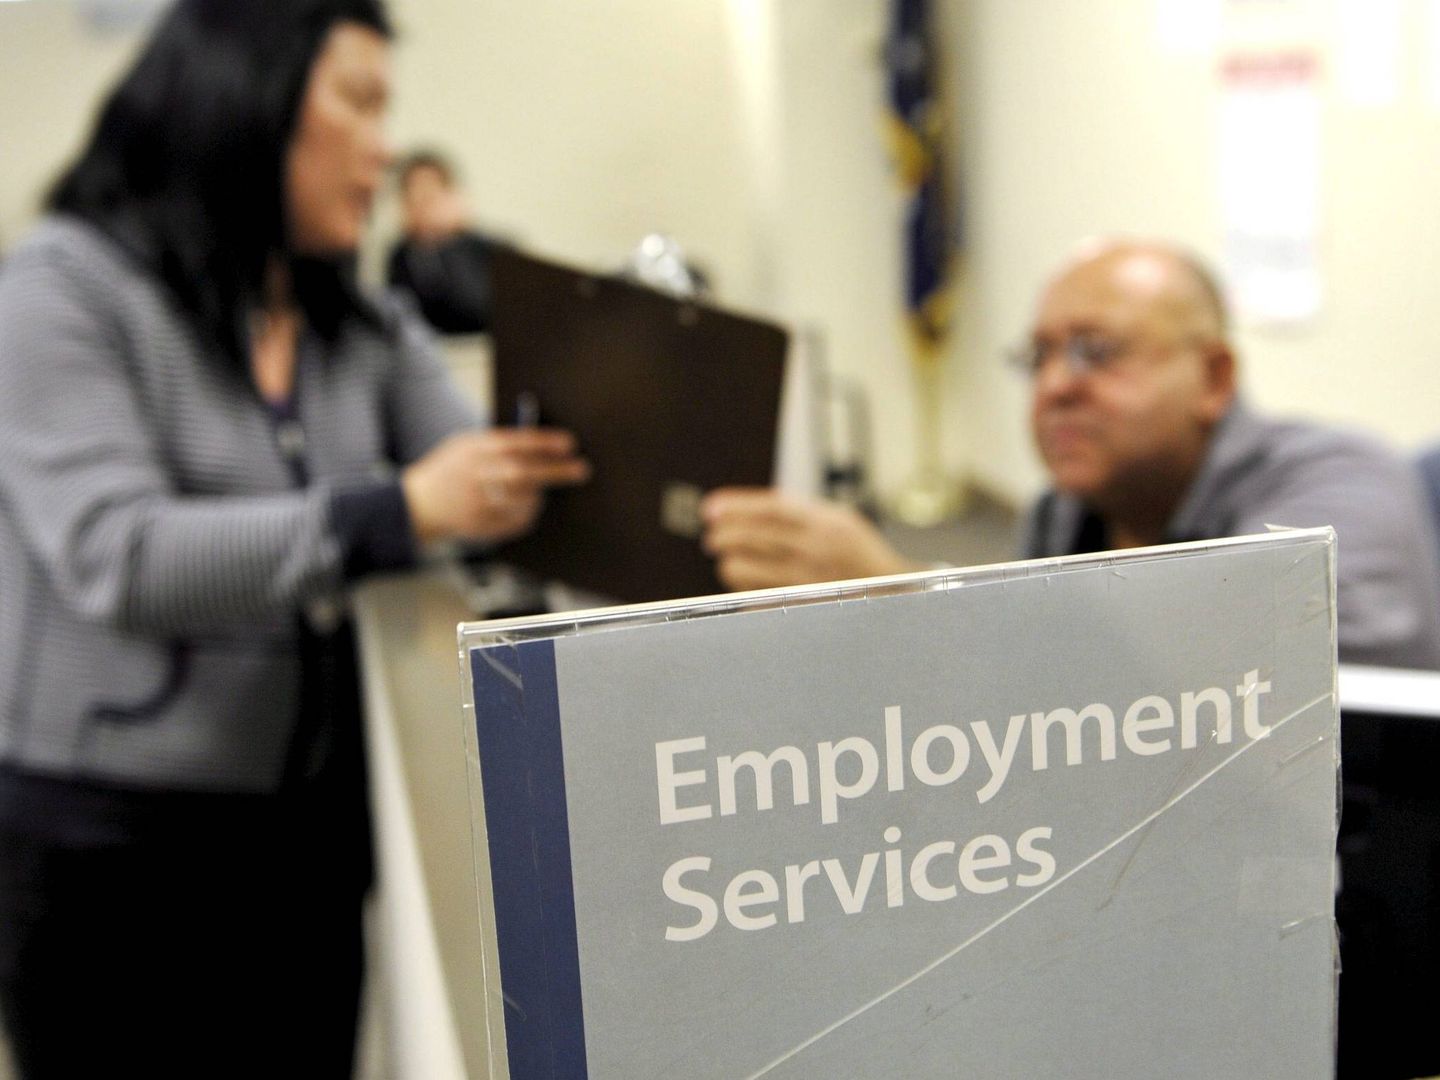 Oficina de empleo en EEUU. (Reuters)